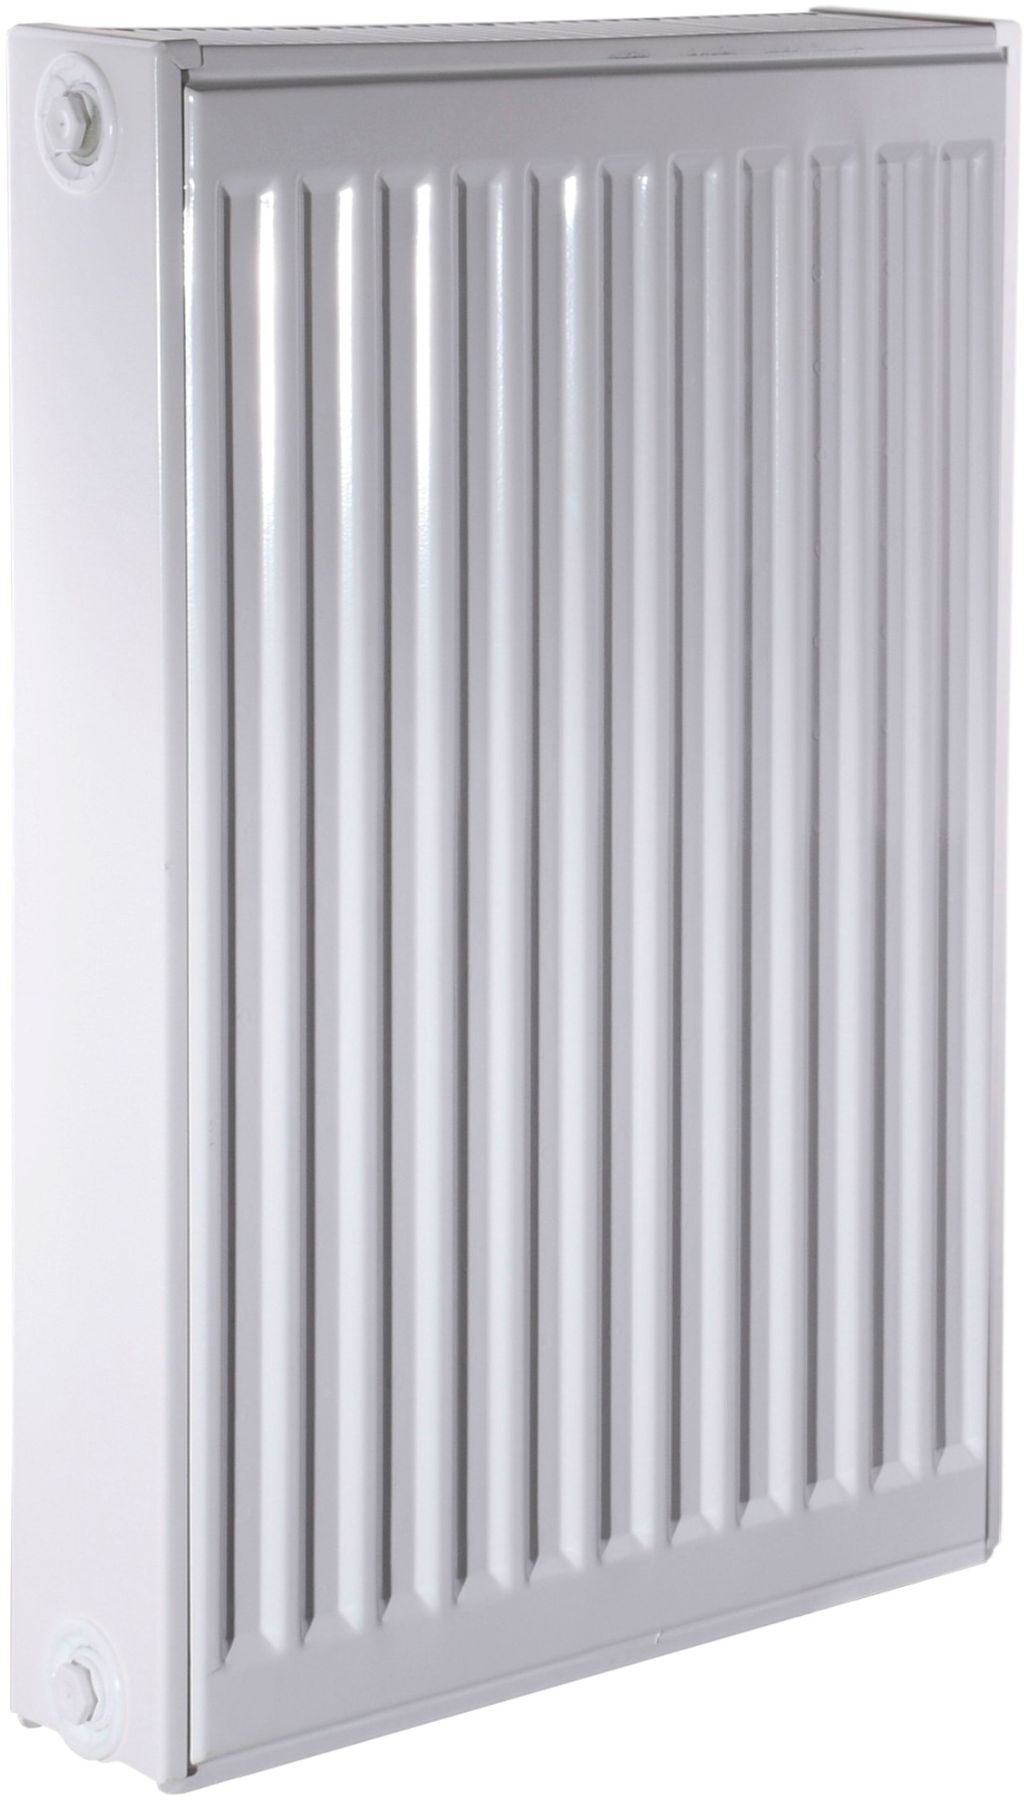 Радиатор для отопления Queen Therm 22 бок 600x400